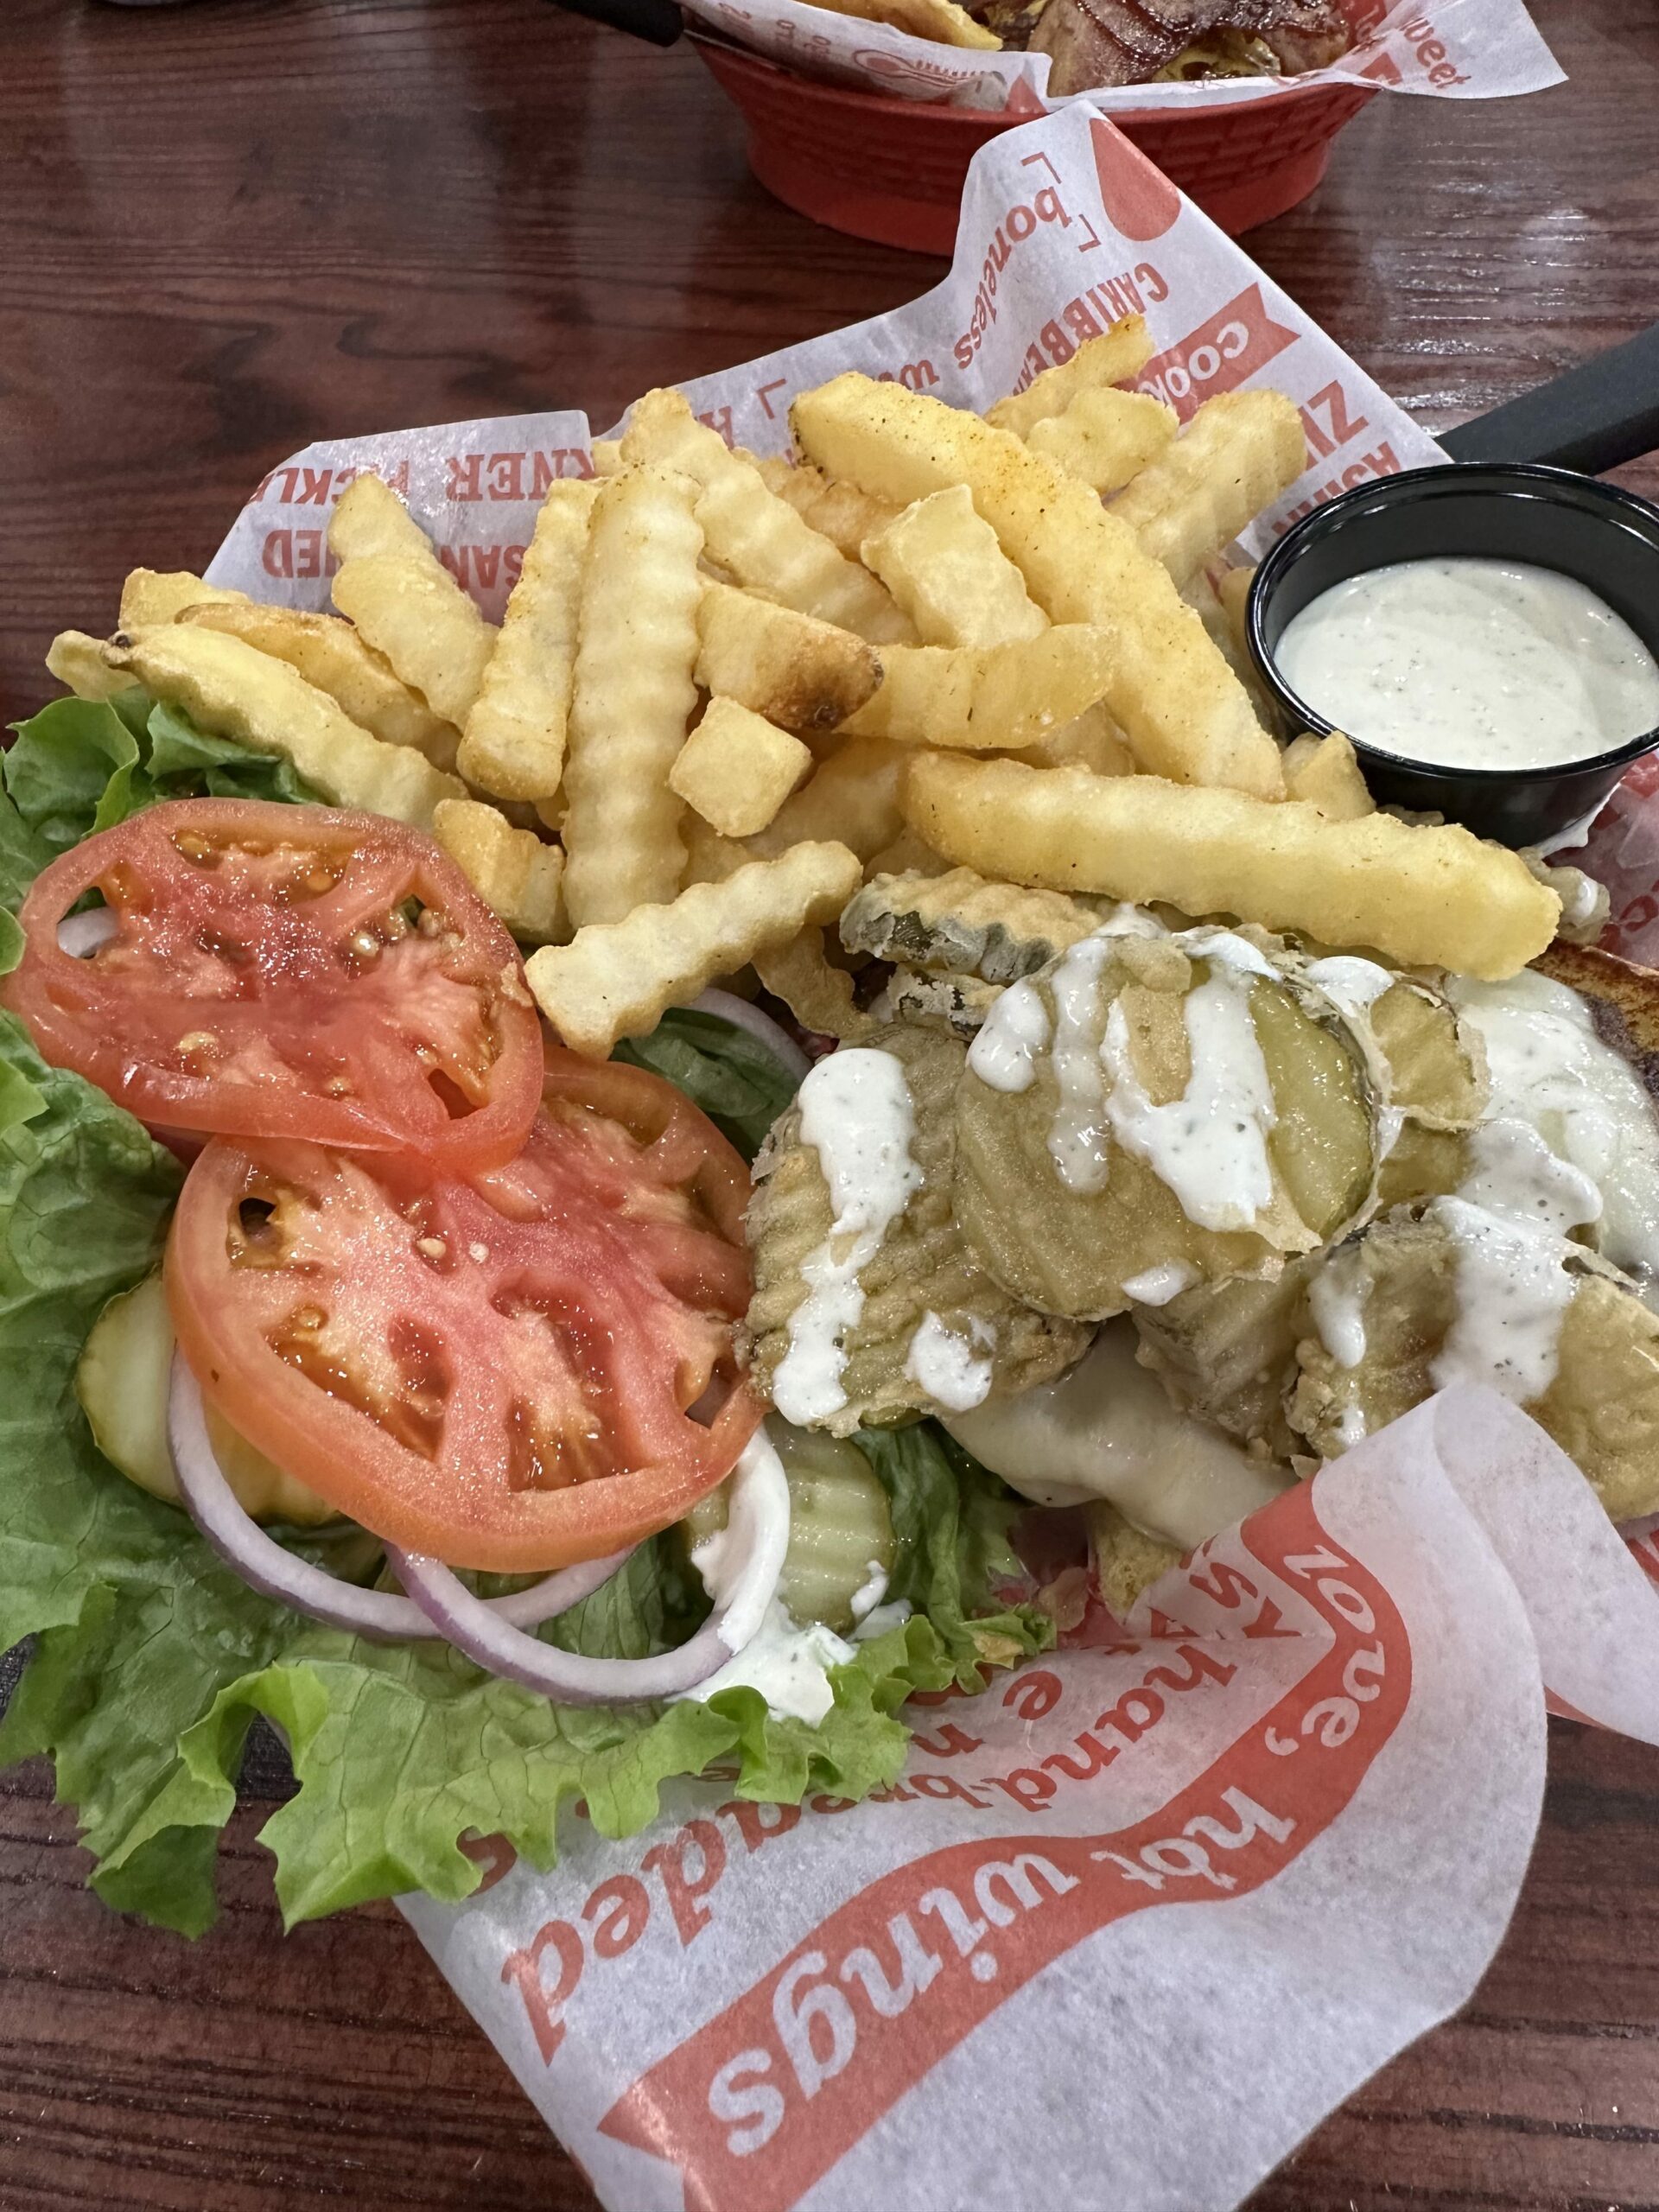 Jefferson's Pickle Burger in Joplin, Missouri.